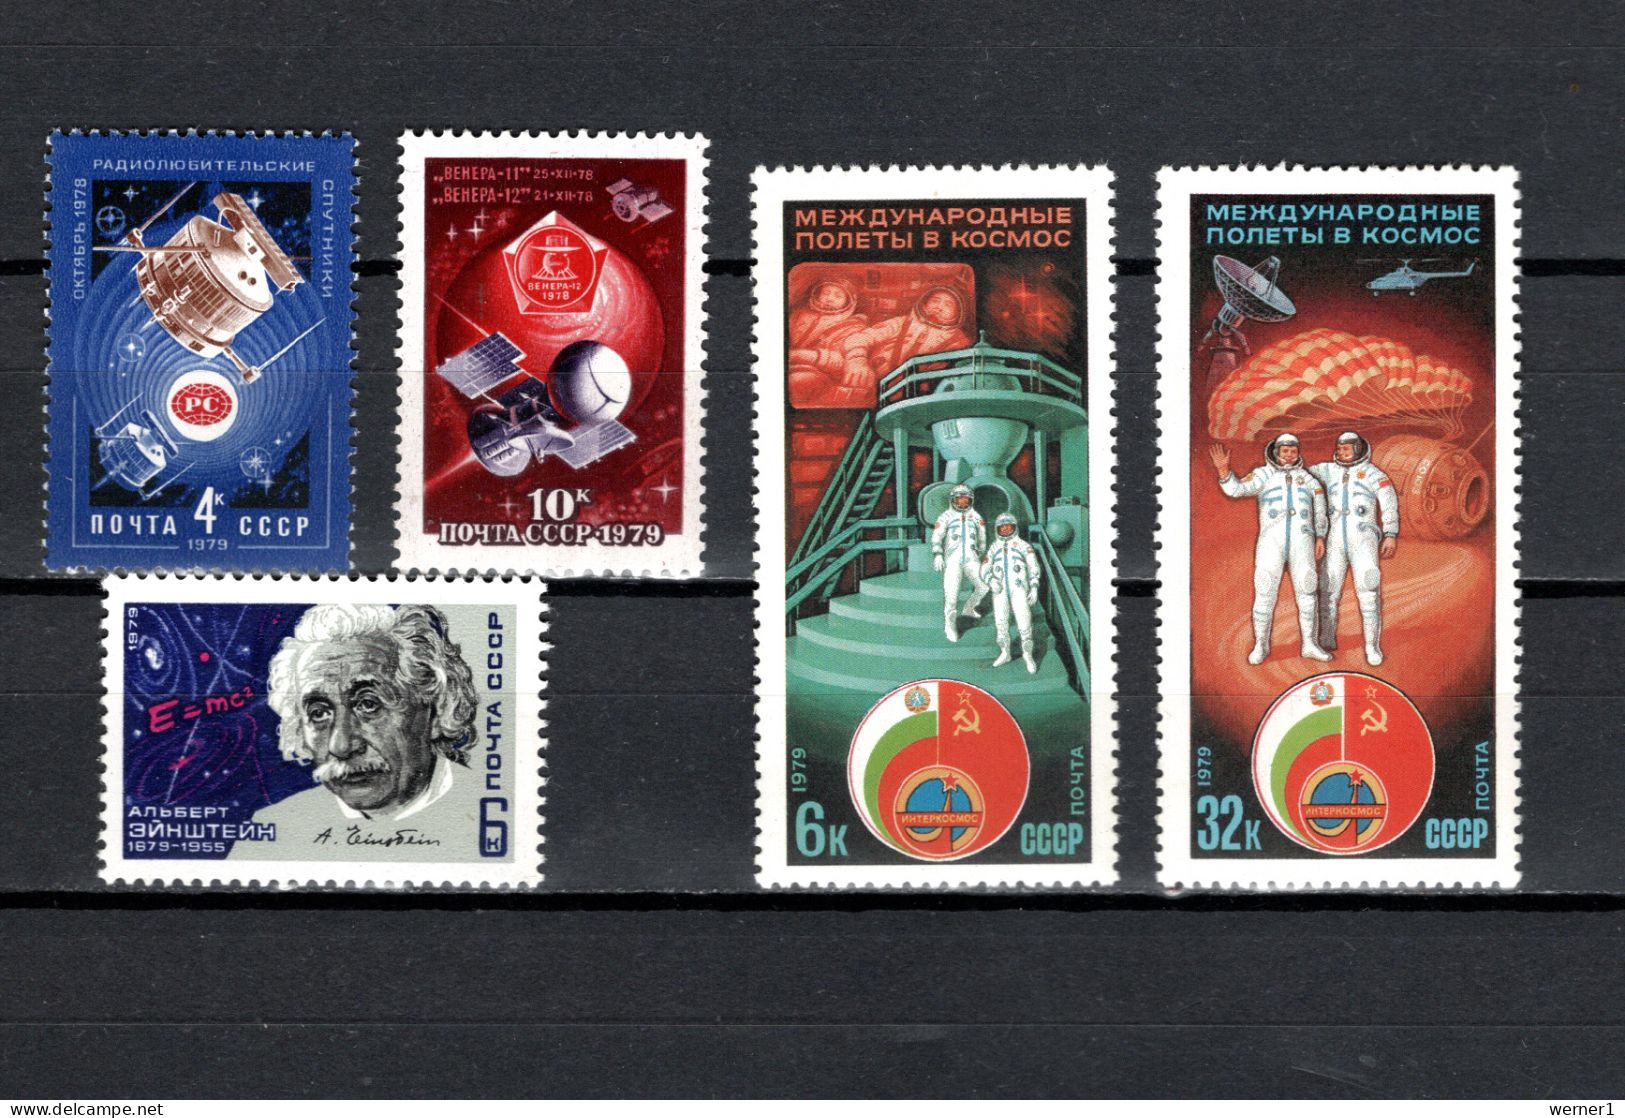 USSR Russia 1979 Space, News Satellites, Venus, Albert Einstein, Interkosmos 5 Stamps MNH - Russia & USSR